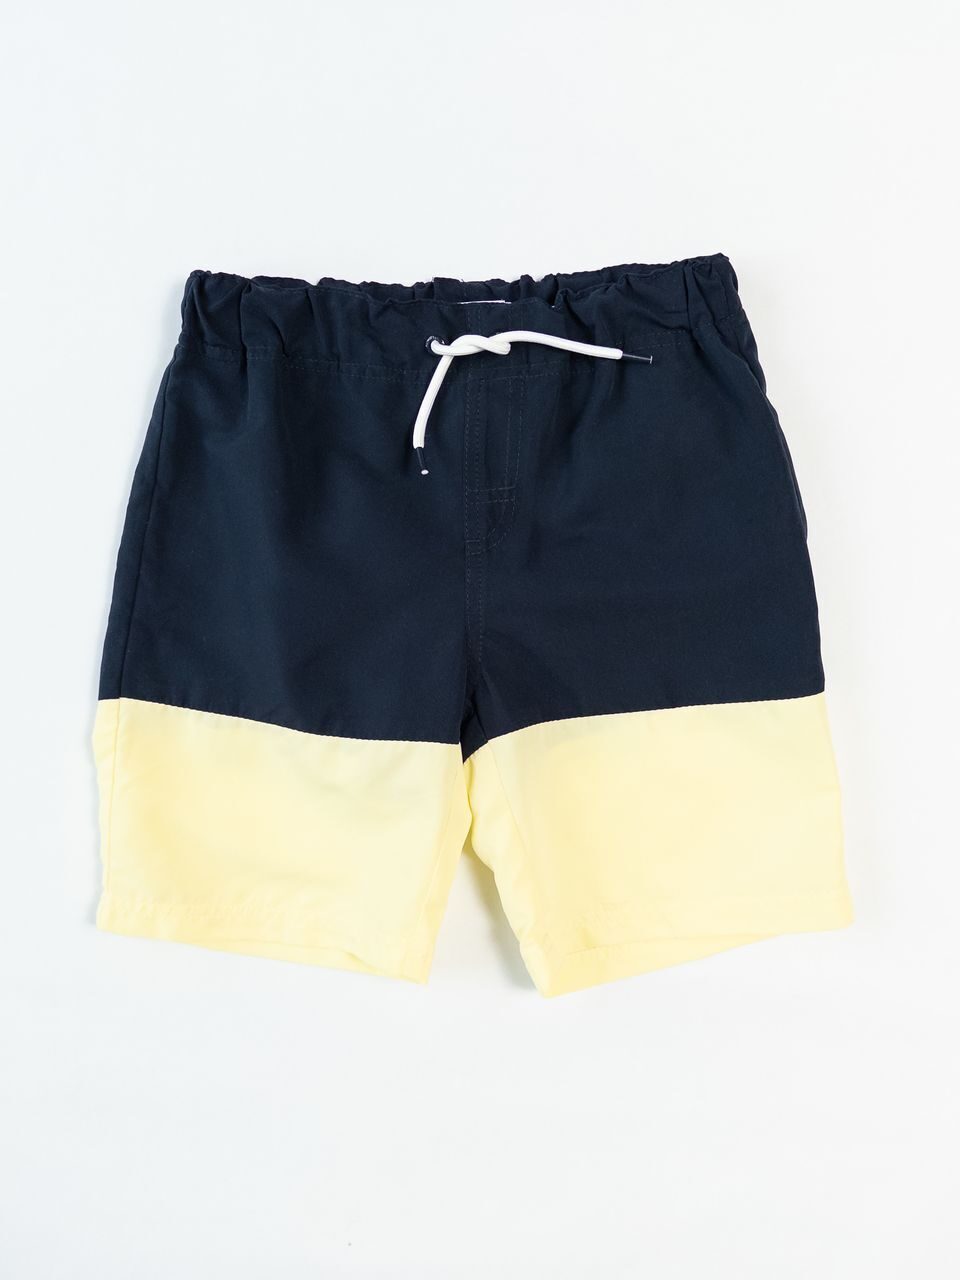 Шорты пляжные на подкладке для мальчика с утягивающей резинкой в поясе цвет синий/желтый на рост 128 см 7-8 лет name it